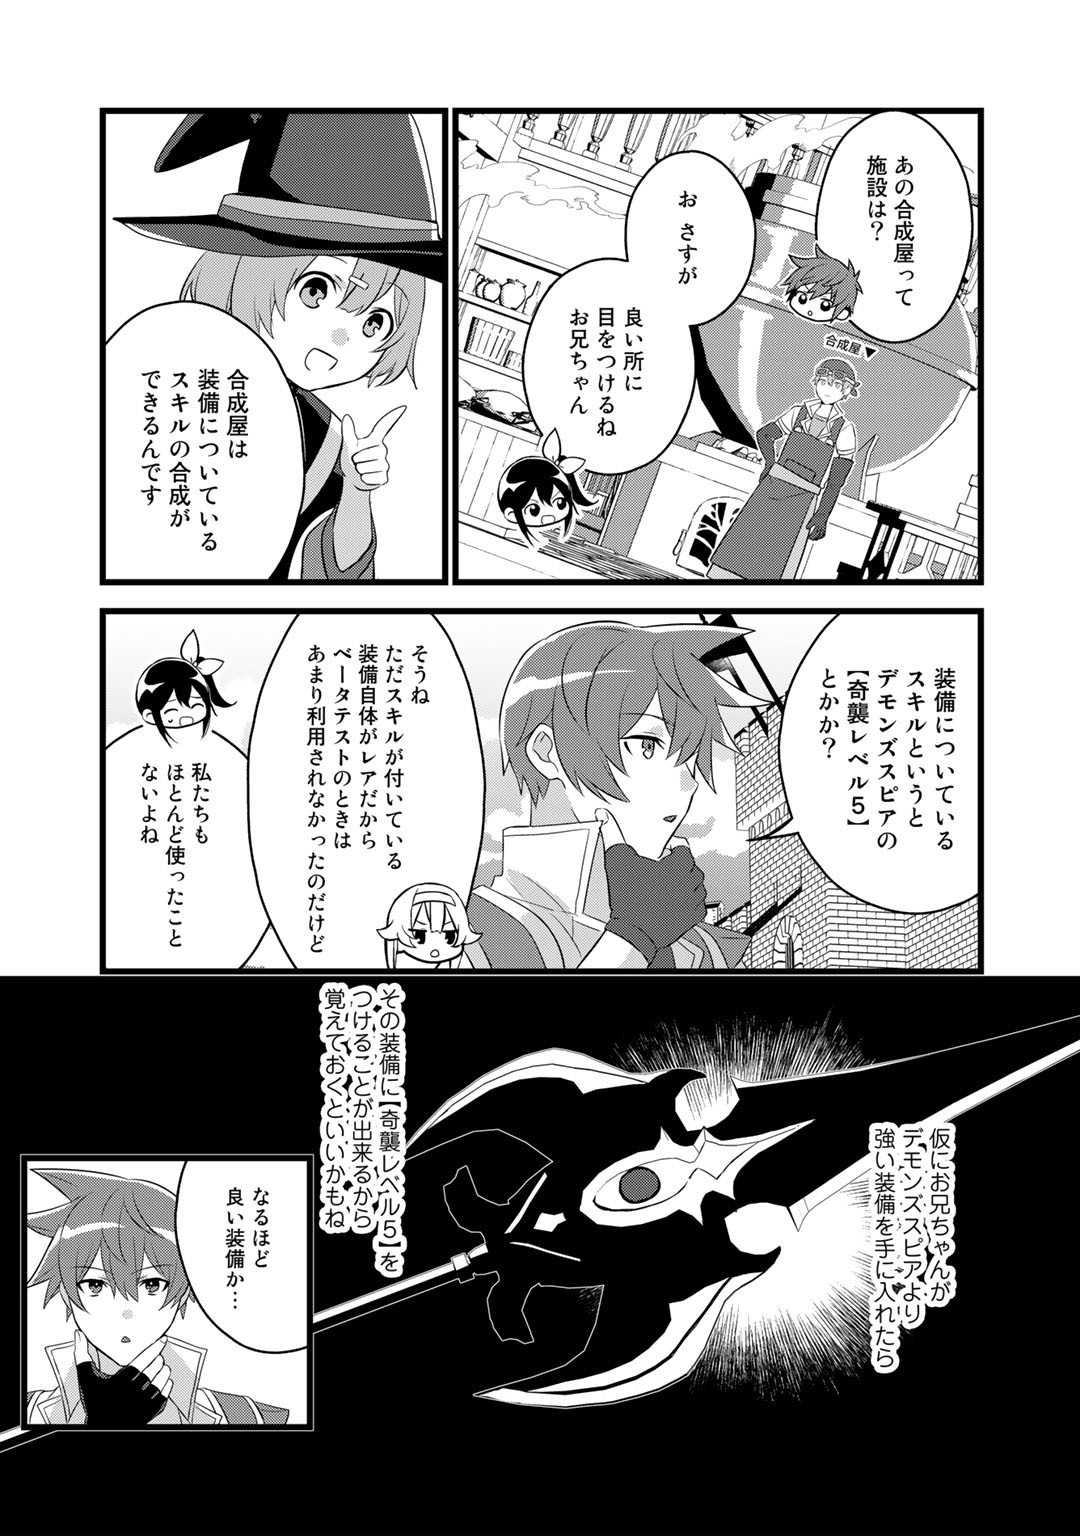 廃ゲーマーな妹と始めるVRMMO生活 第23話 - Page 5